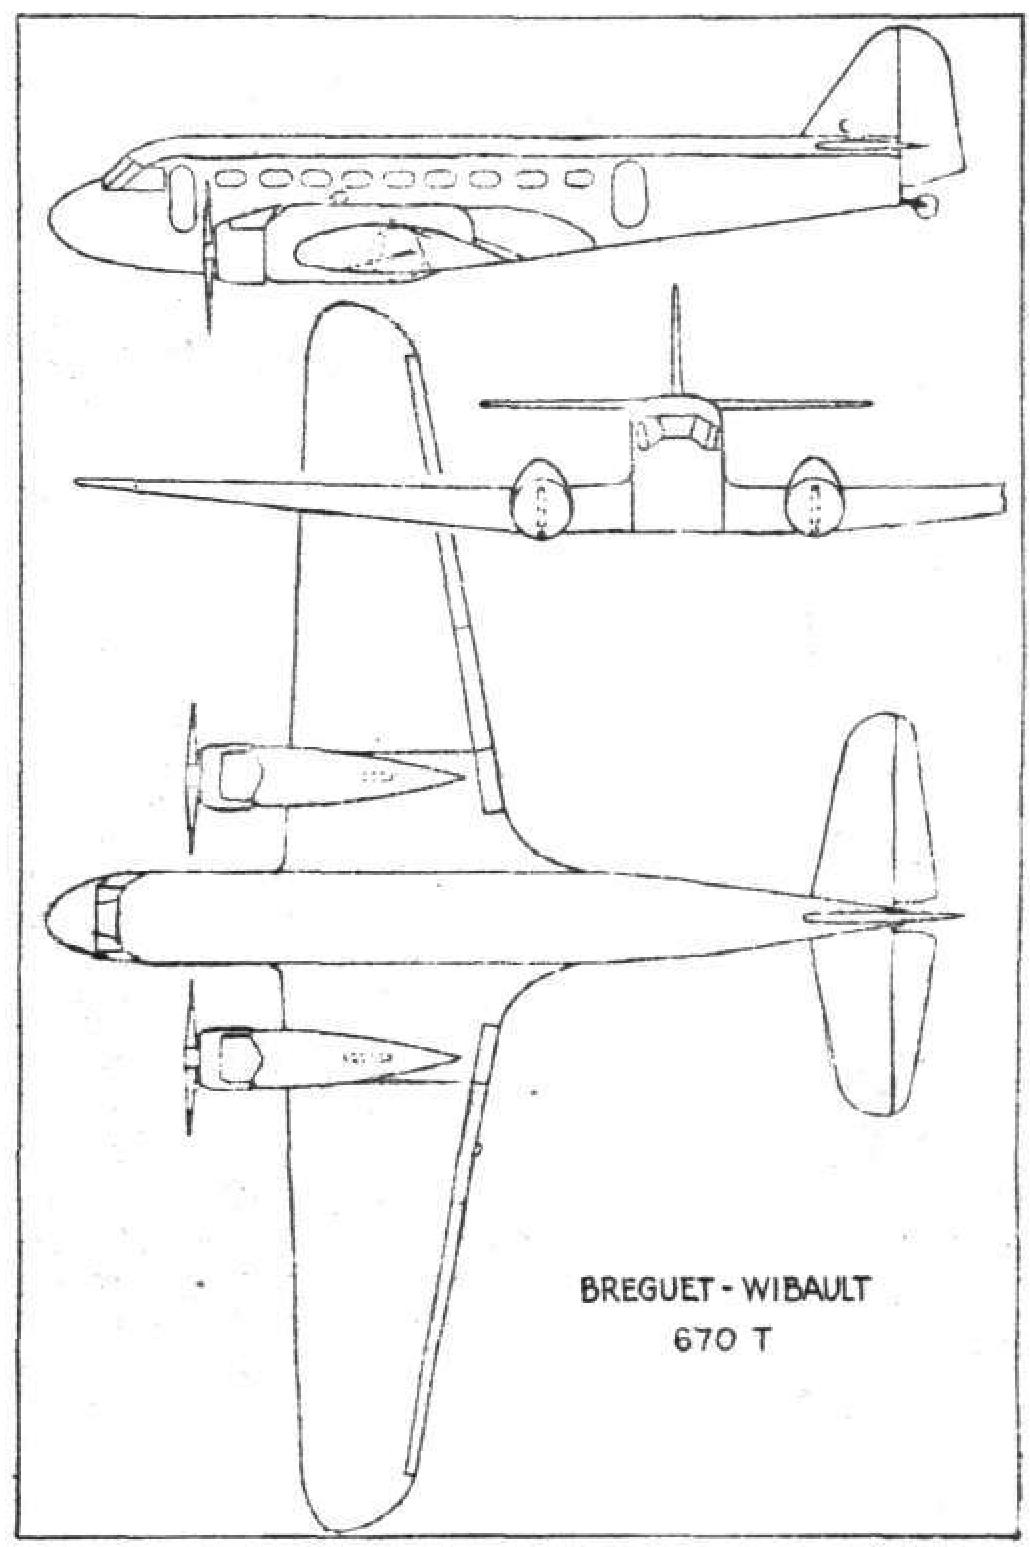 Пассажирский самолет Breguet-Wibault 670. Франция